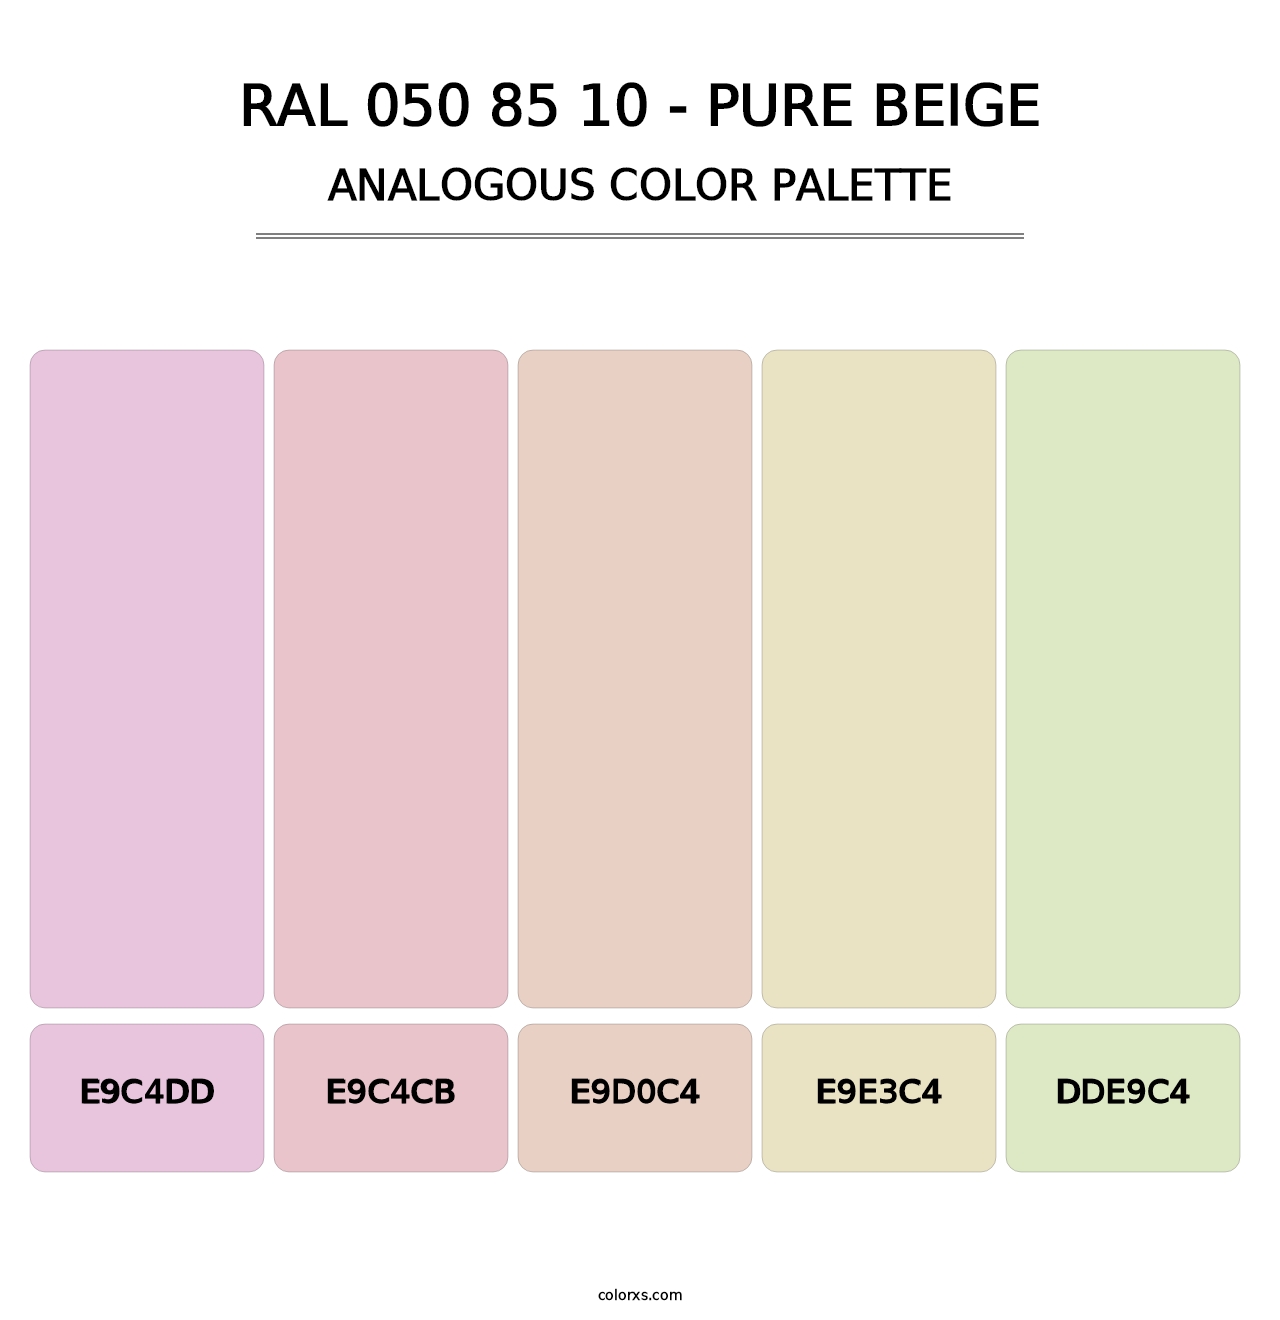 RAL 050 85 10 - Pure Beige - Analogous Color Palette